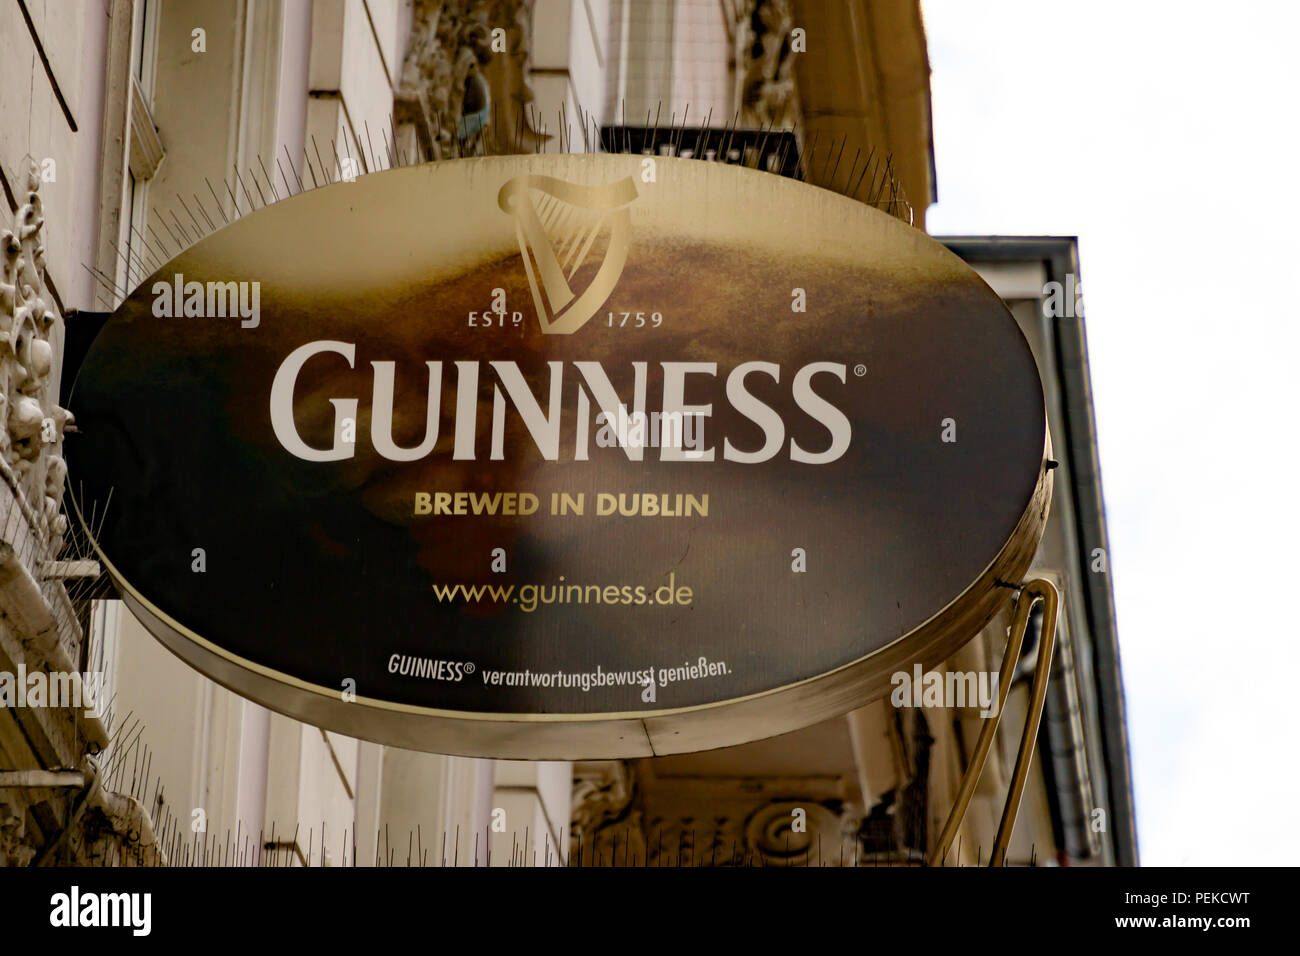 Wiesbaden, Germania - Giugno 03 2018: GUINNESS logo su una facciata. Guinness è una famosa birra irlandese, prodotta a Dublino. Foto Stock